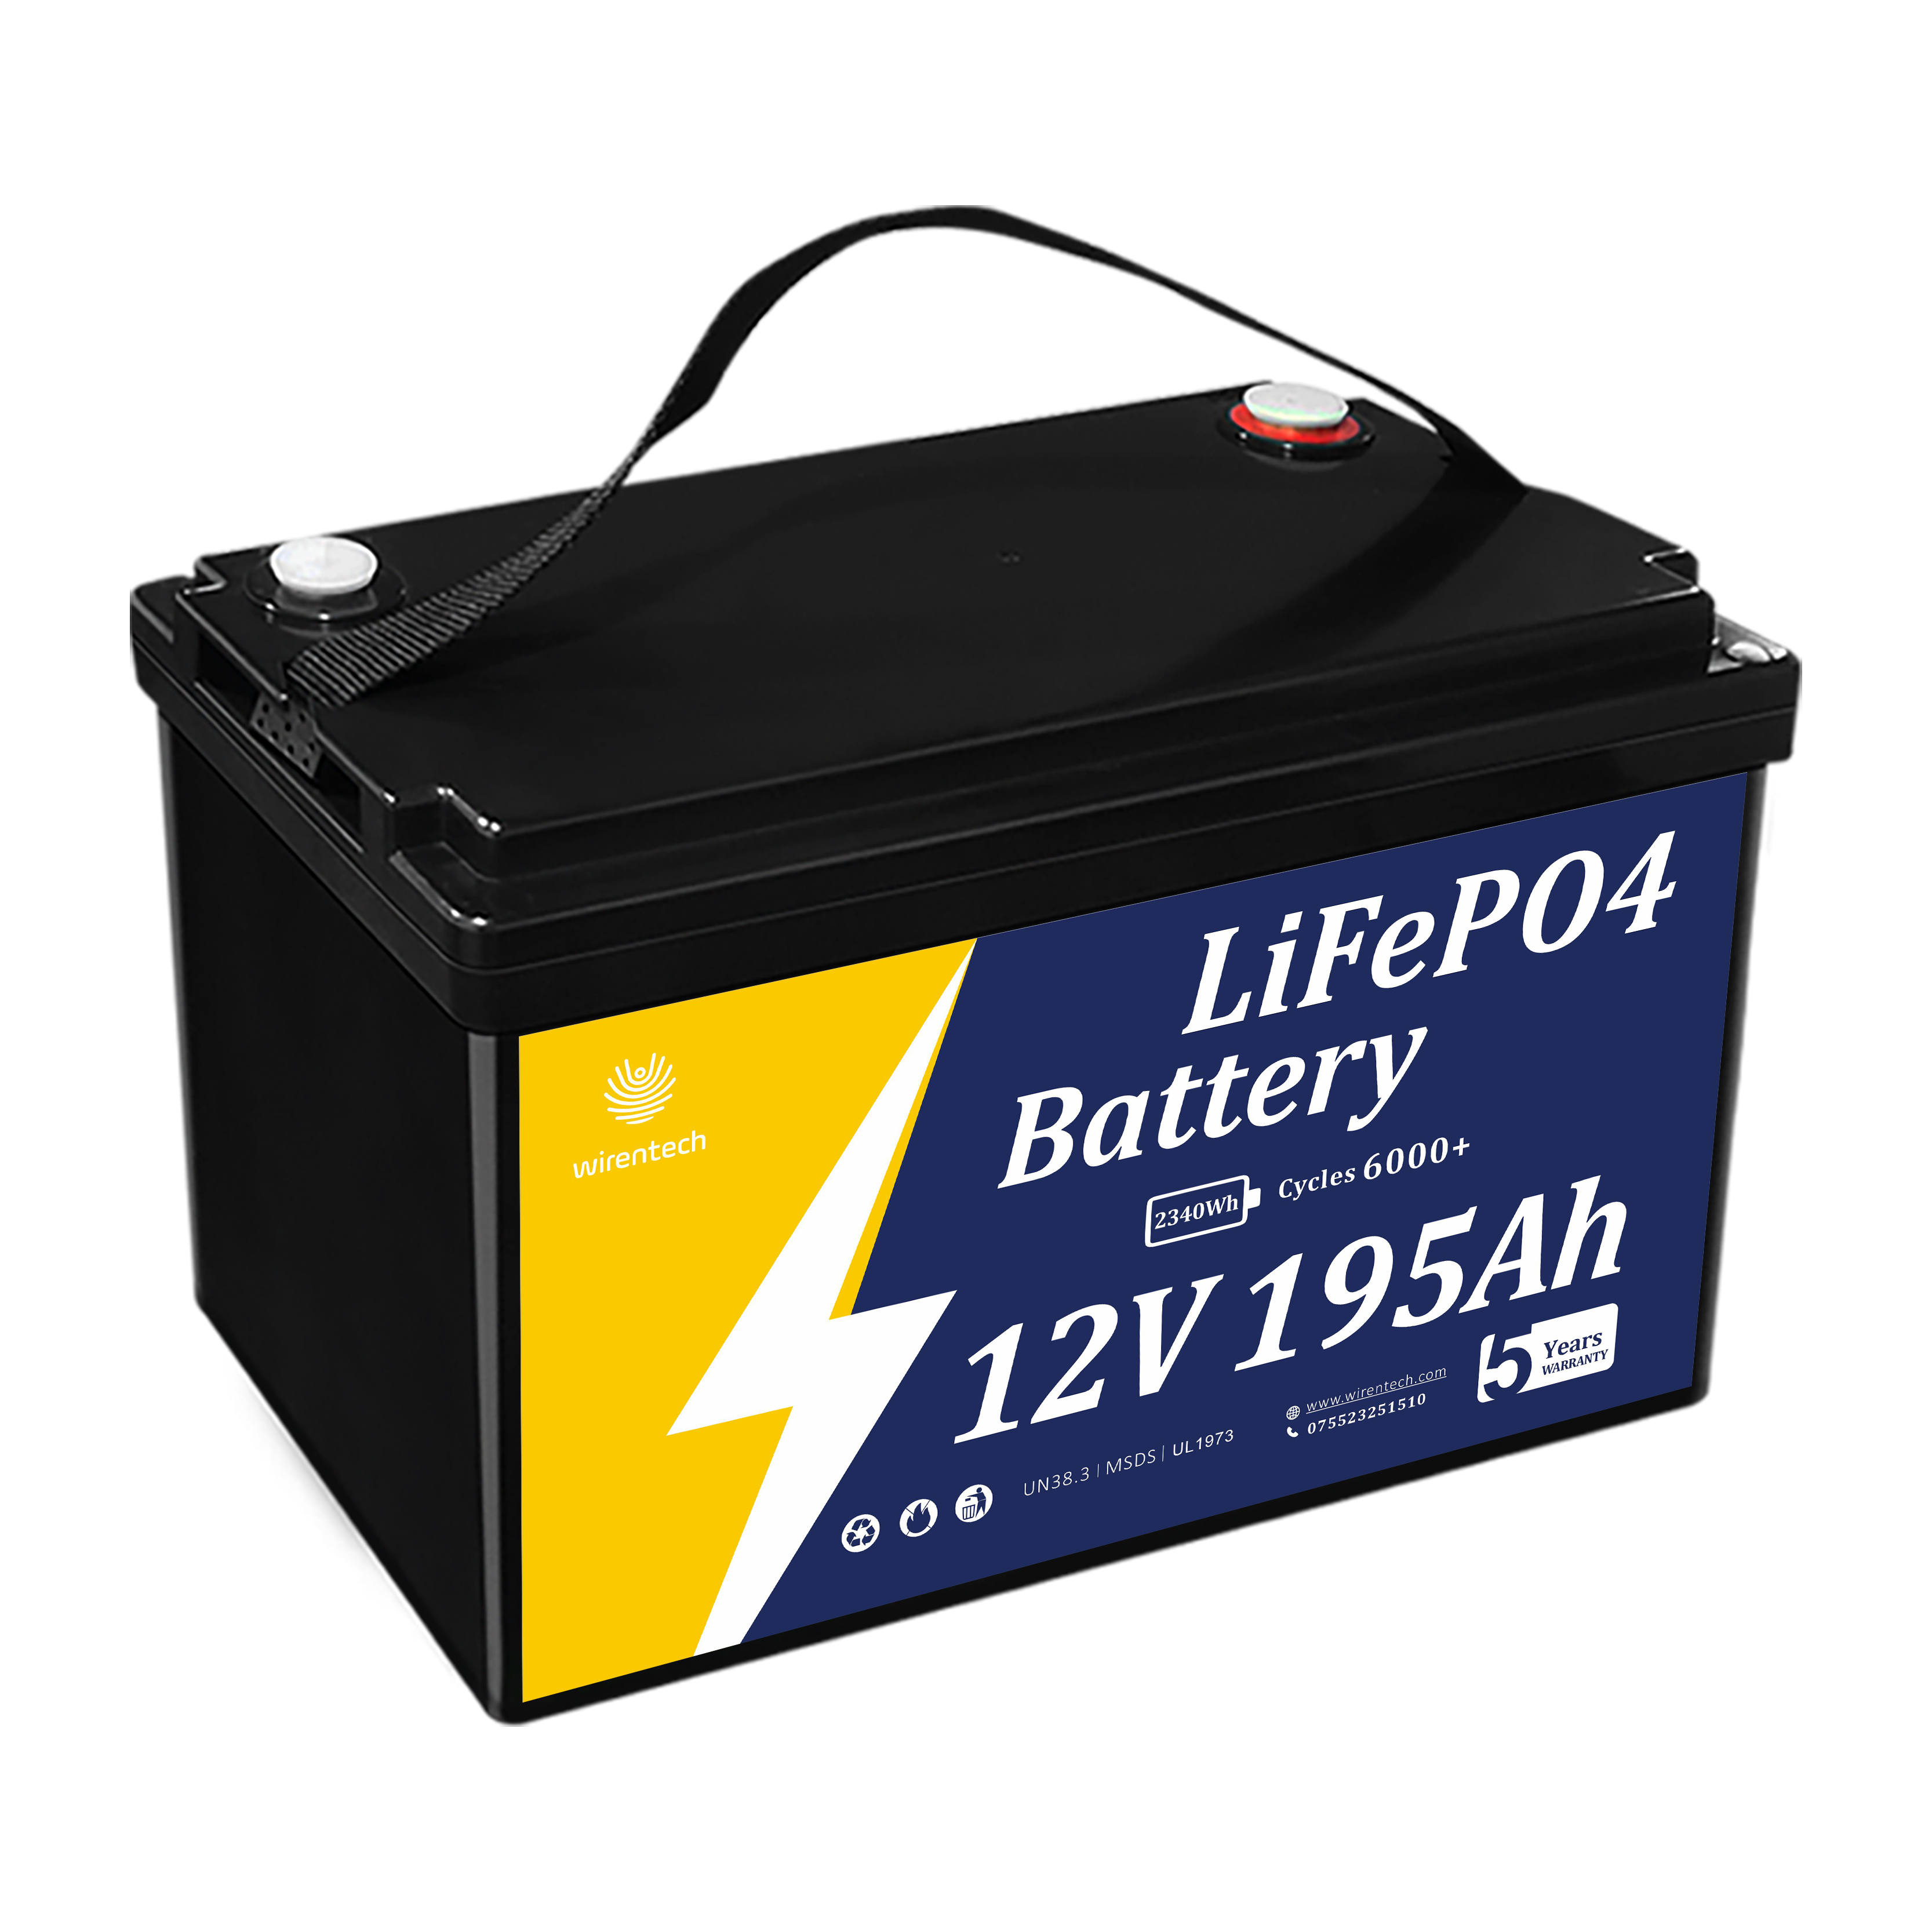 Batterie Lithium-Ion 12V, 190ah, 195ah, poudre de Phosphate de fer et de Lithium, 30 Kwh, batterie Lifepo4, conteneur hors réseau canadien, maison